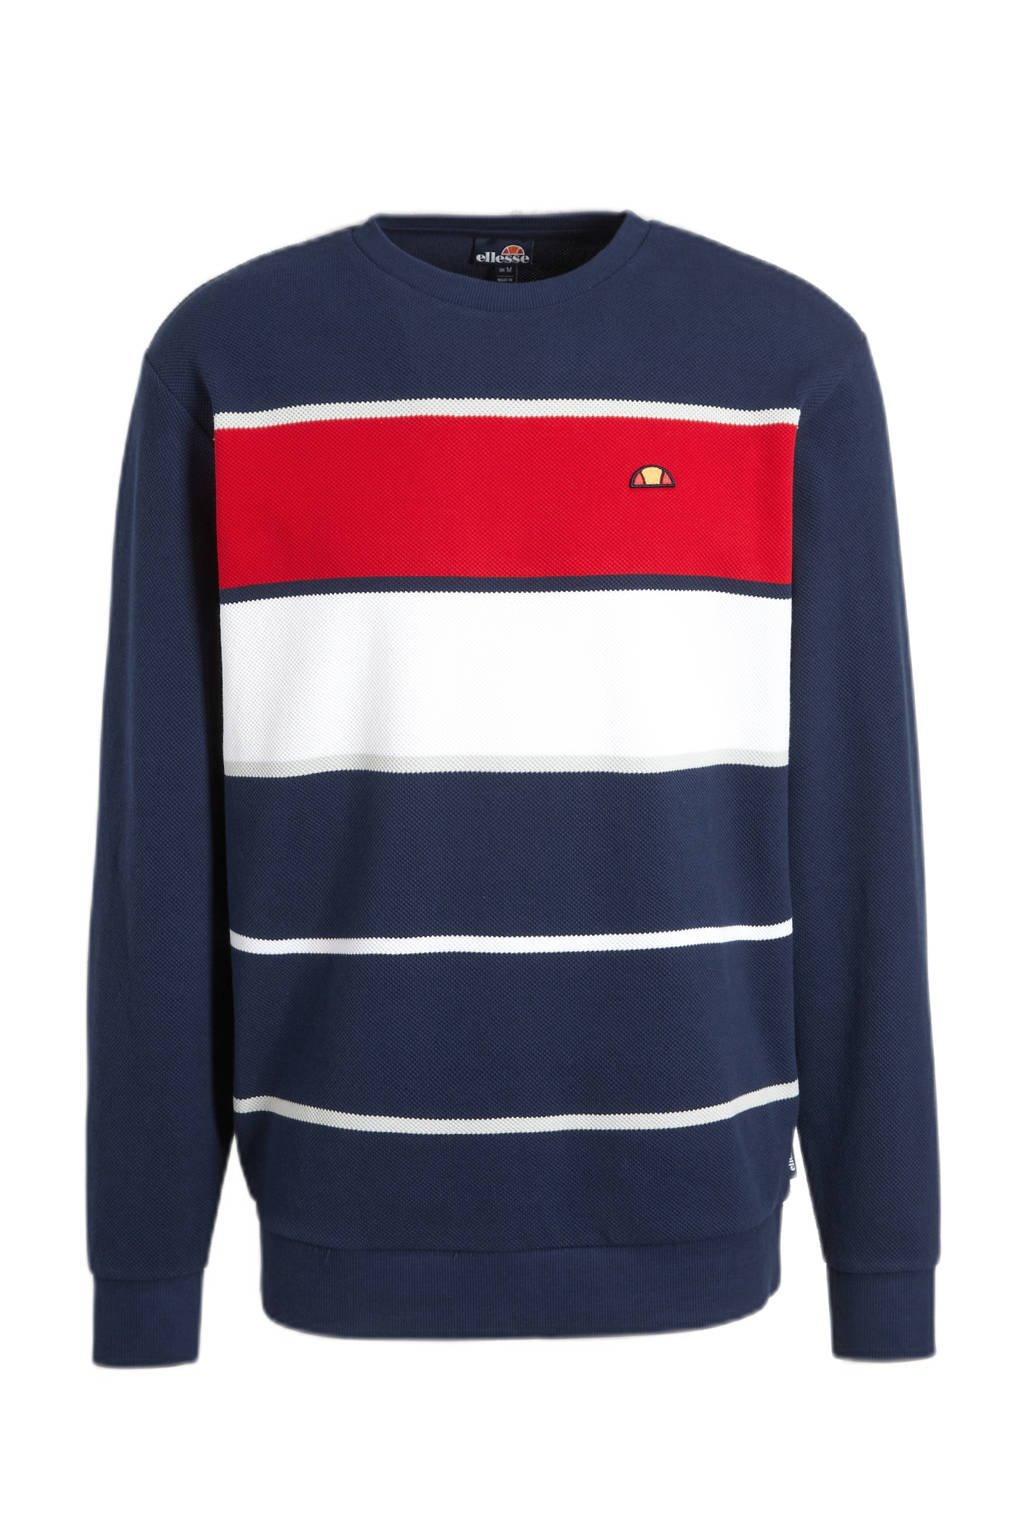 dubbele behalve voor catalogus Ellesse sweater Billar donkerblauw/wit/rood | wehkamp